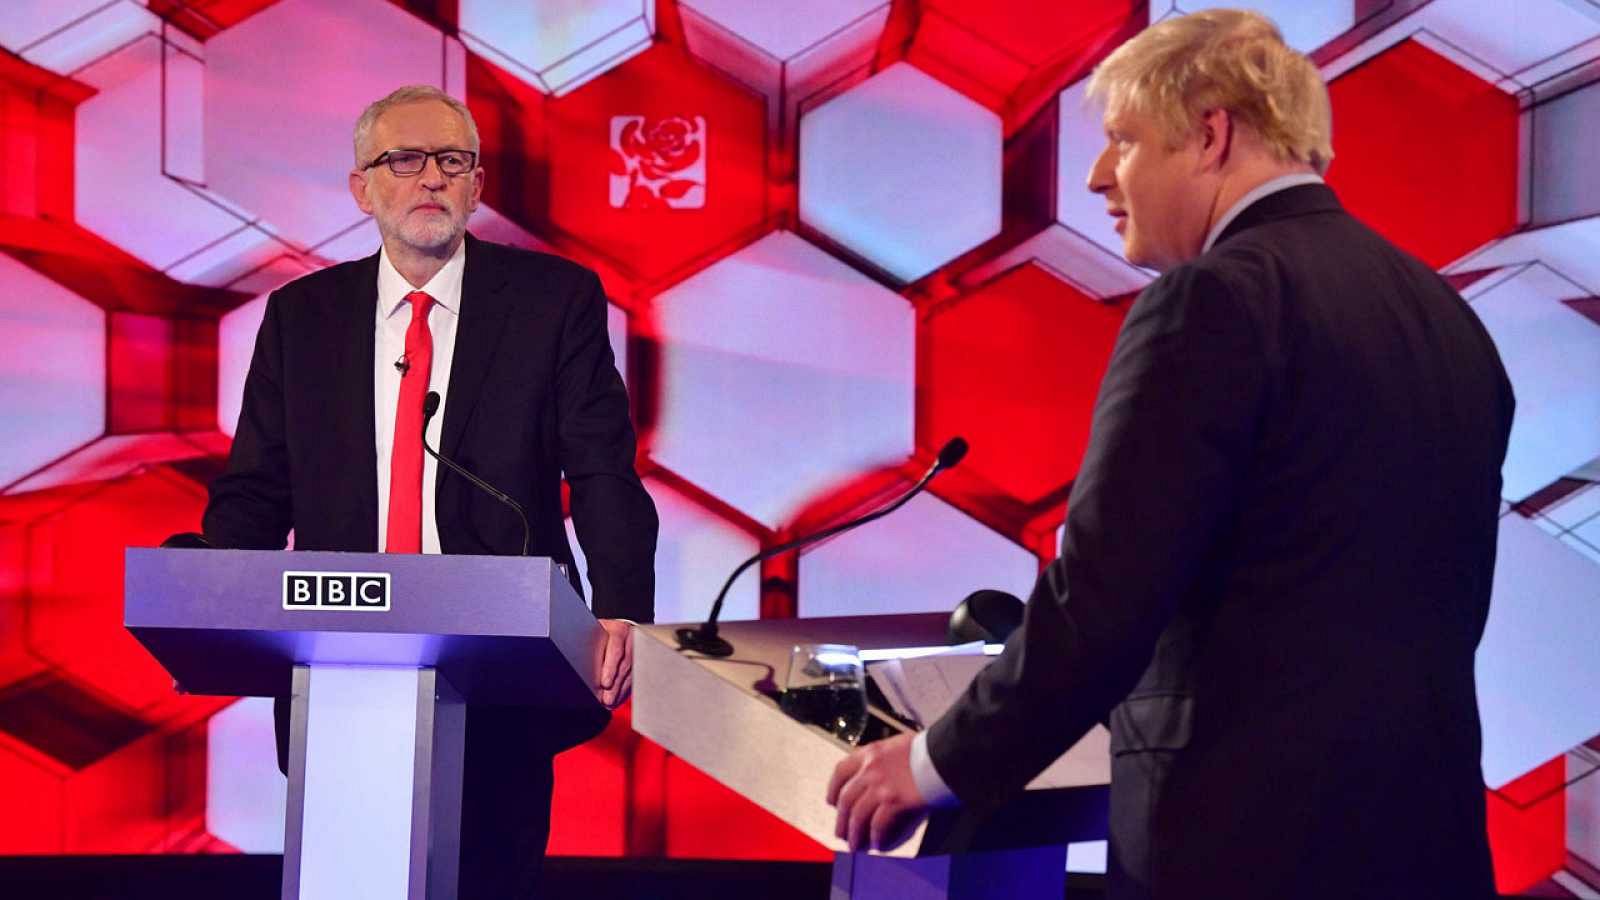 Elecciones Reino Unido: La batalla por el 'Brexit' domina el cara a cara electoral entre Johnson y Corbyn